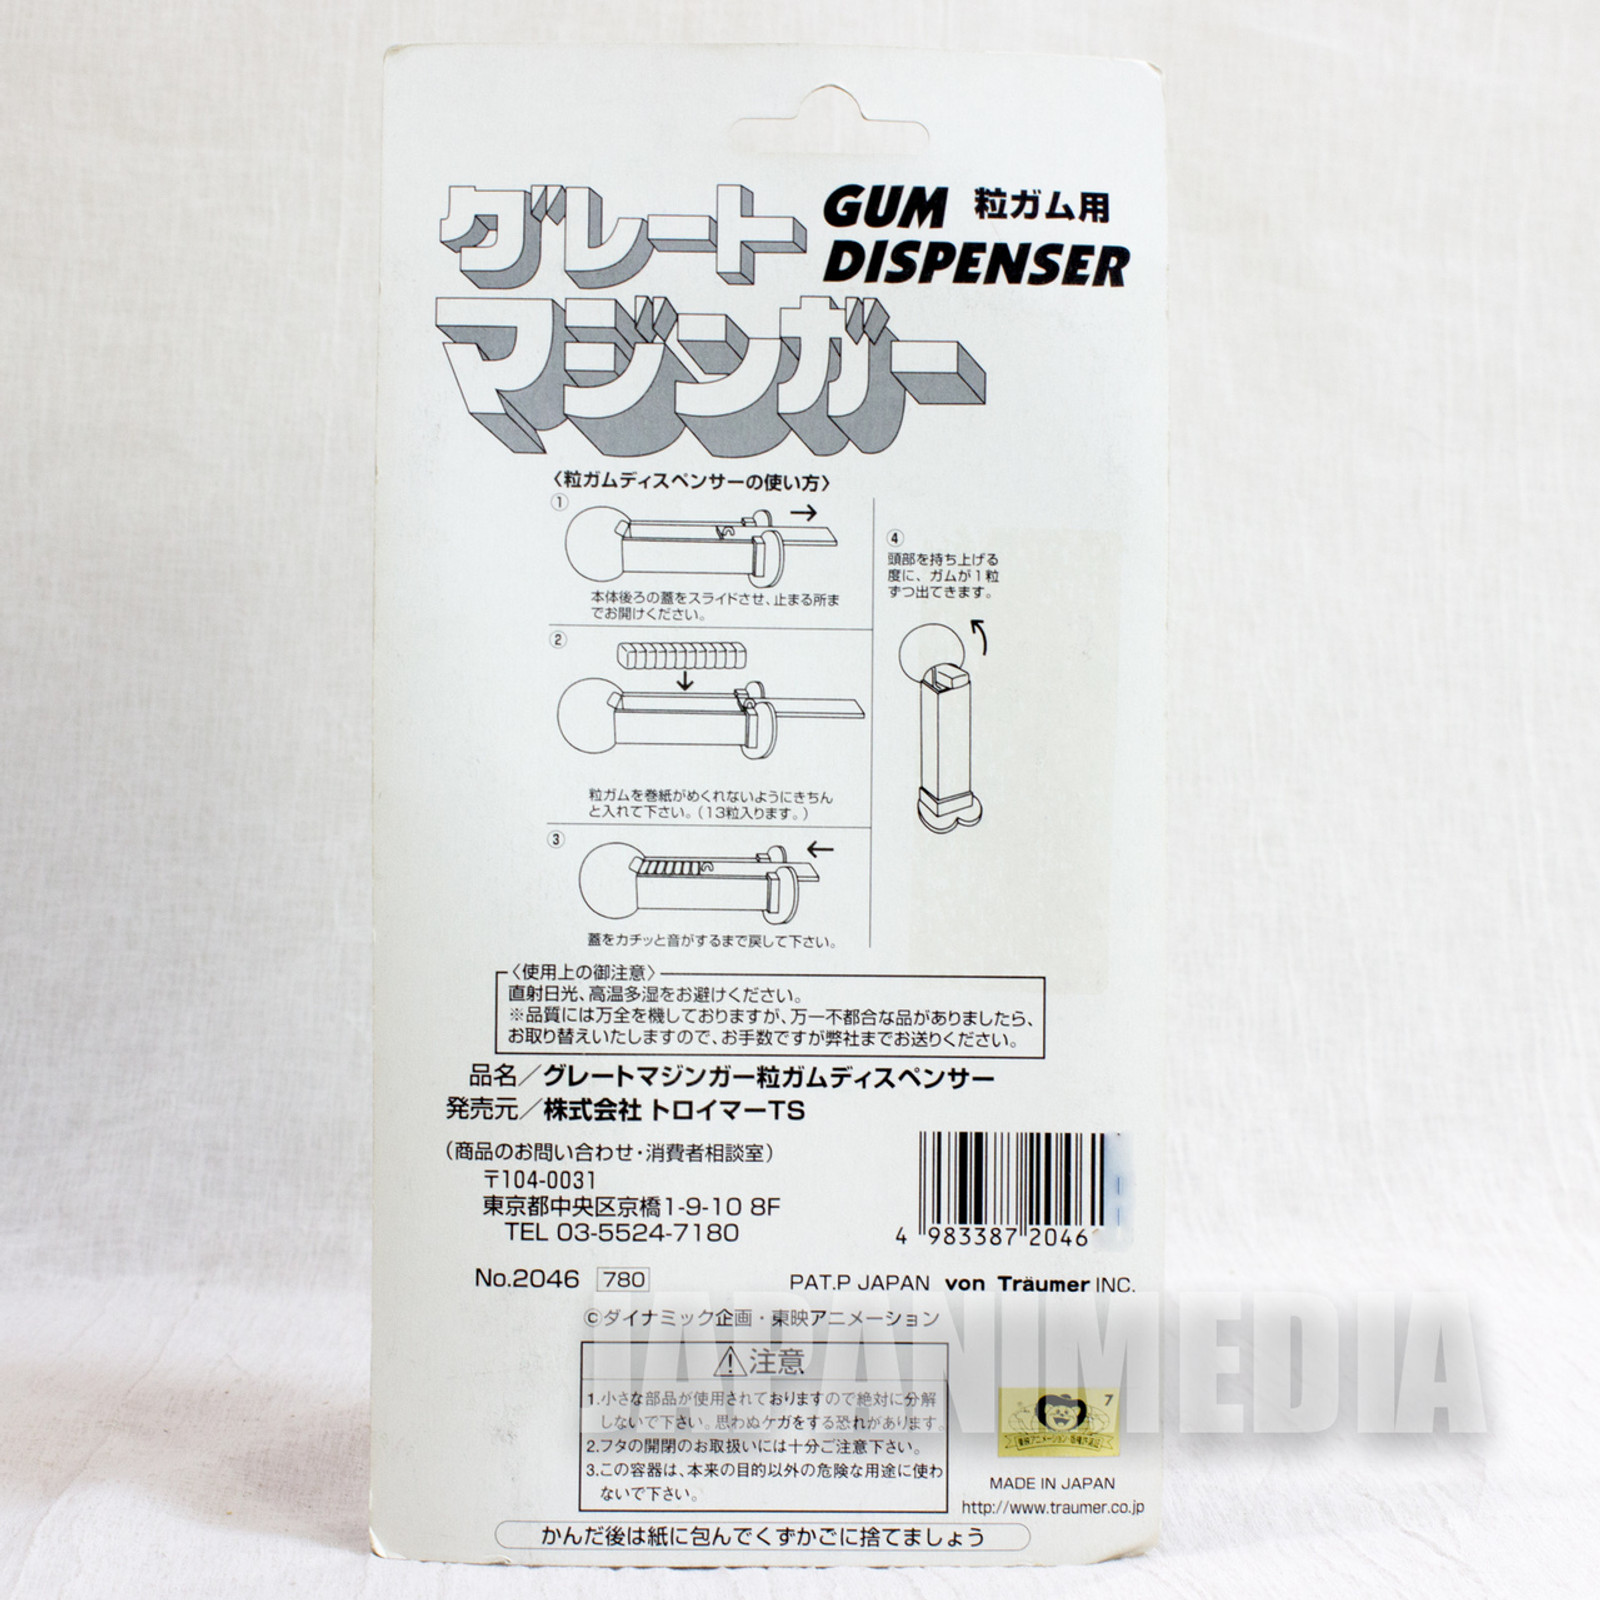 RARE! Great Mazinger Gum Dispenser 6" Figure JAPAN GAME PEZ